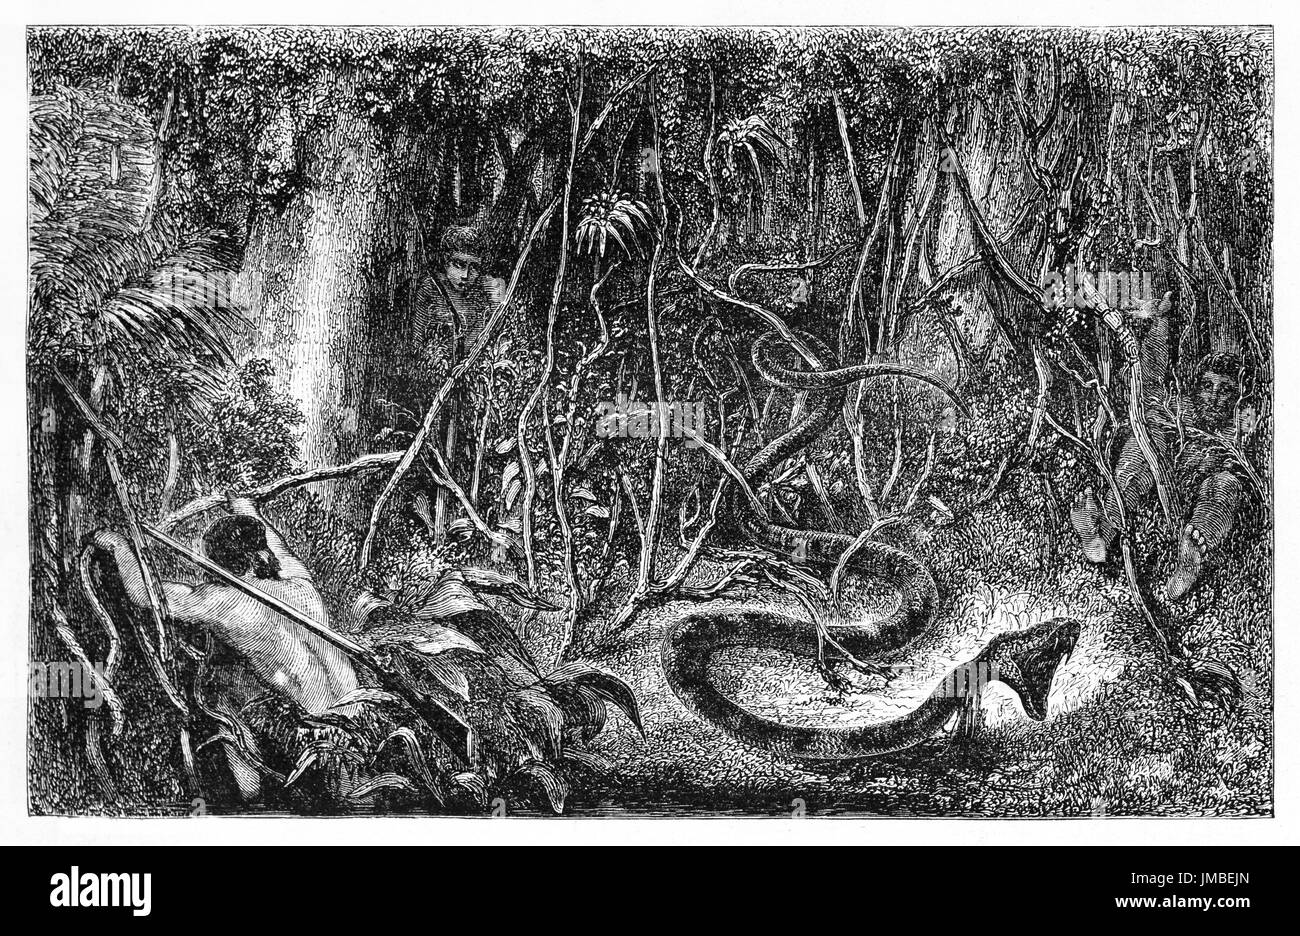 Sucuriju, serpent géant mythique amazonien, réaliste Anaconda, s'attaquant à la végétation de la jungle sombre. Art de style gravure par Minne et Rondé 1861 Banque D'Images